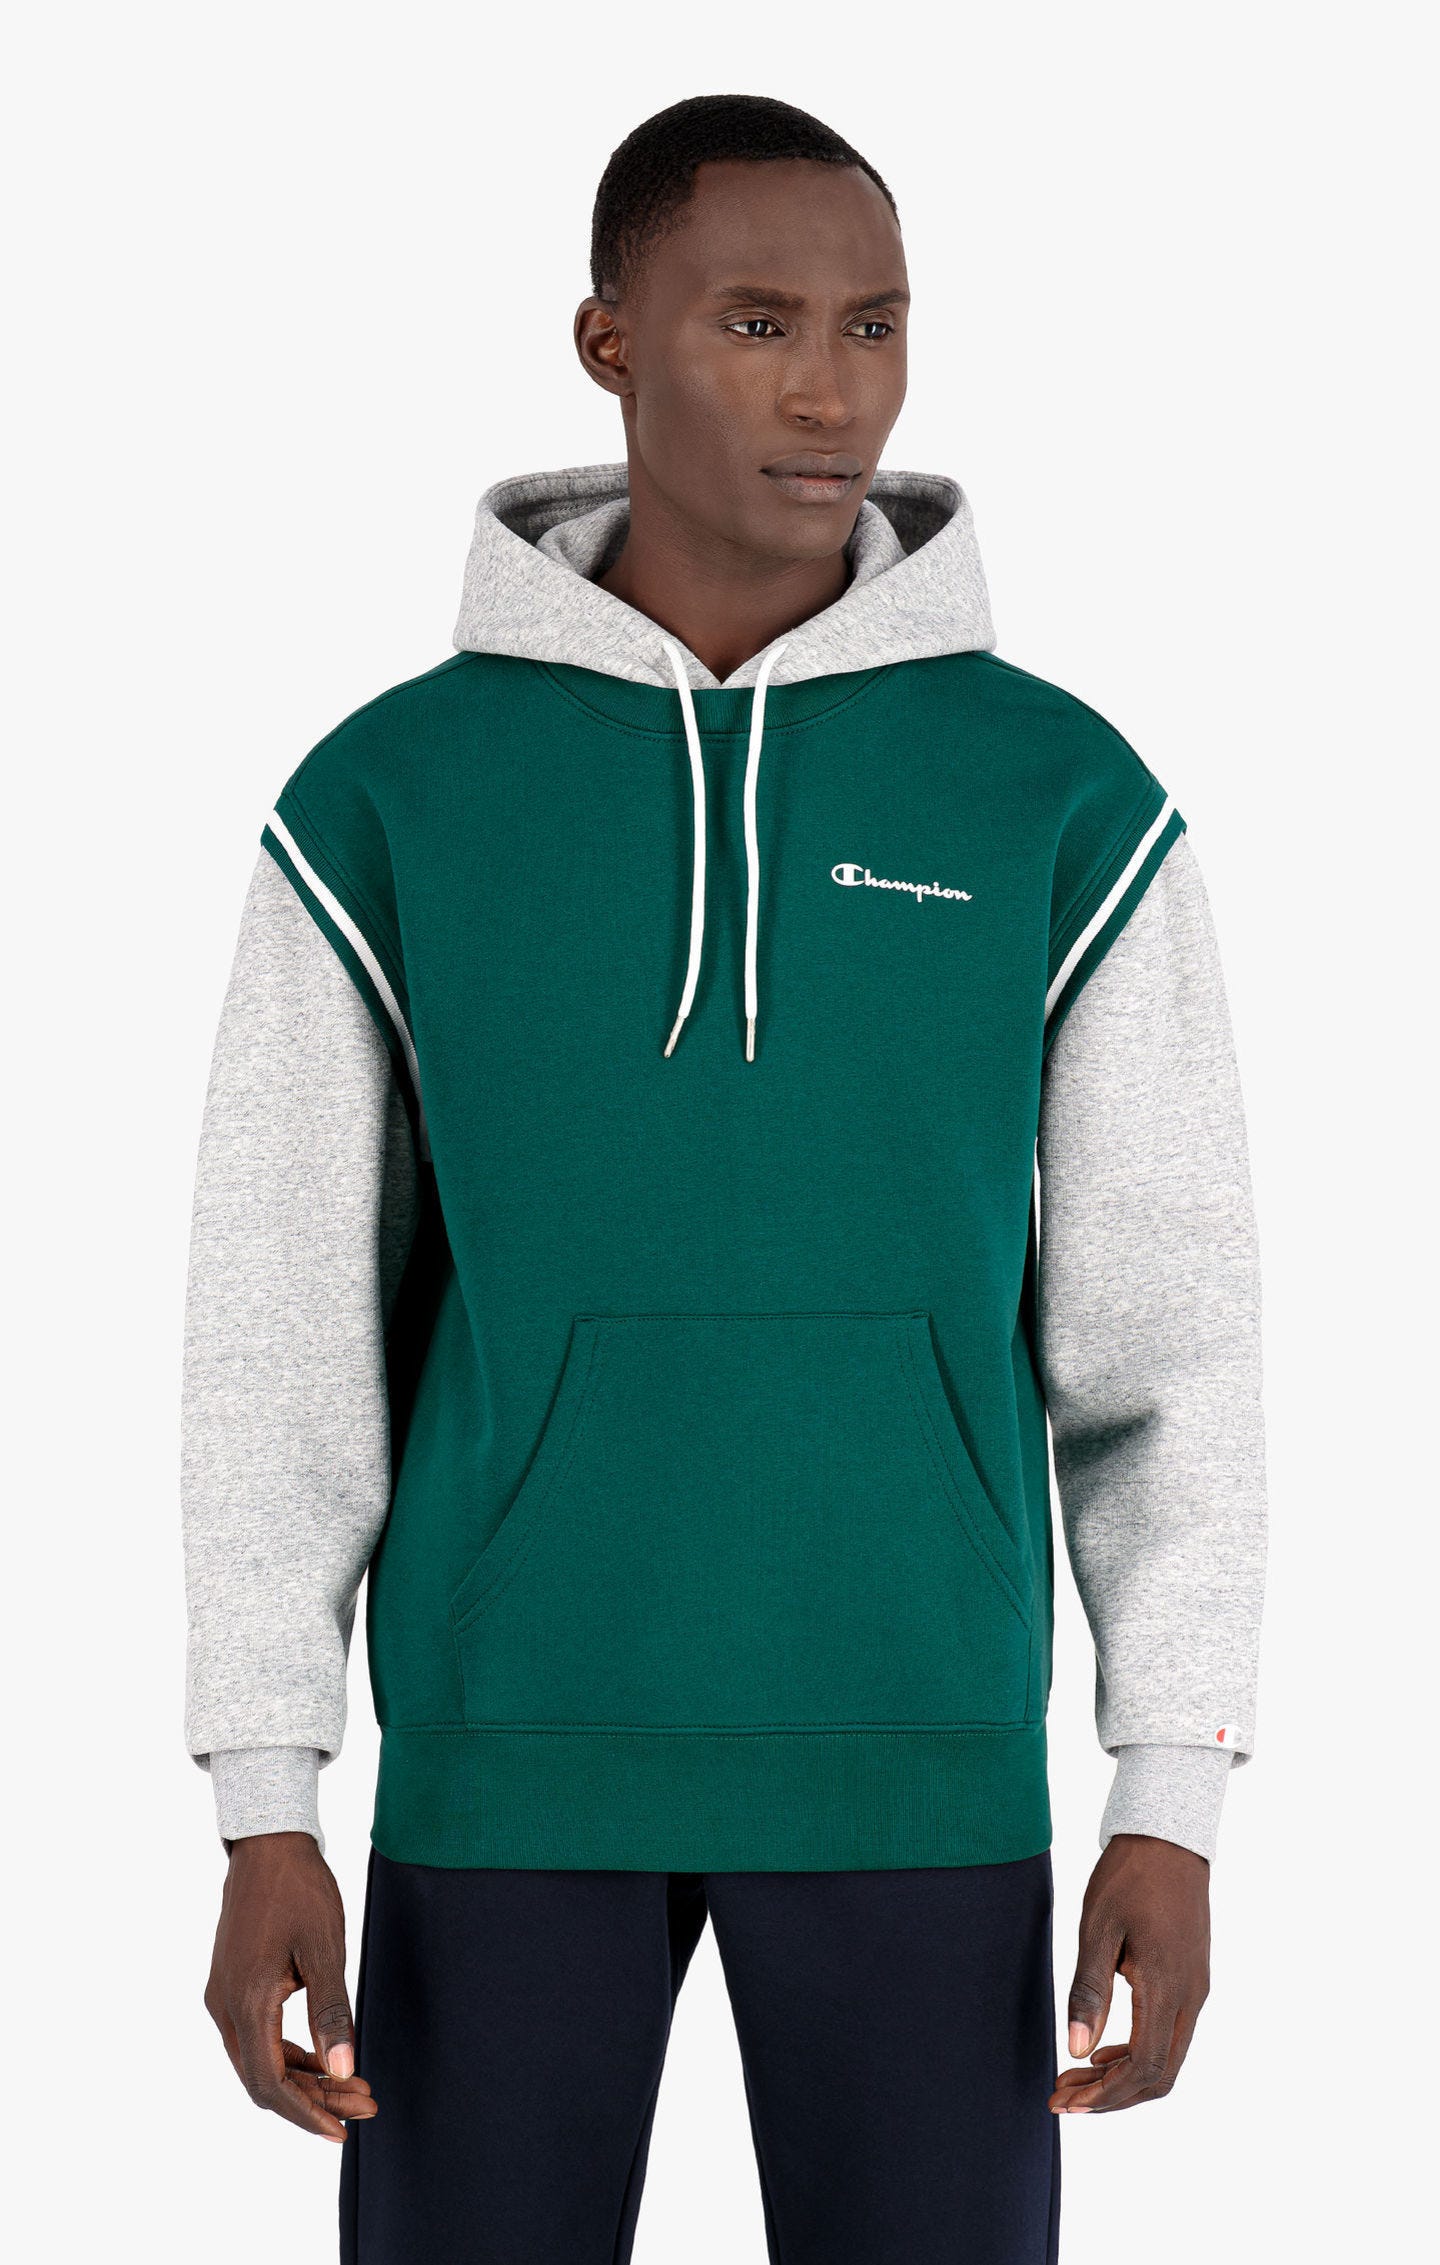 Sweatshirt à capuche, superpositions contrastées et petit logo